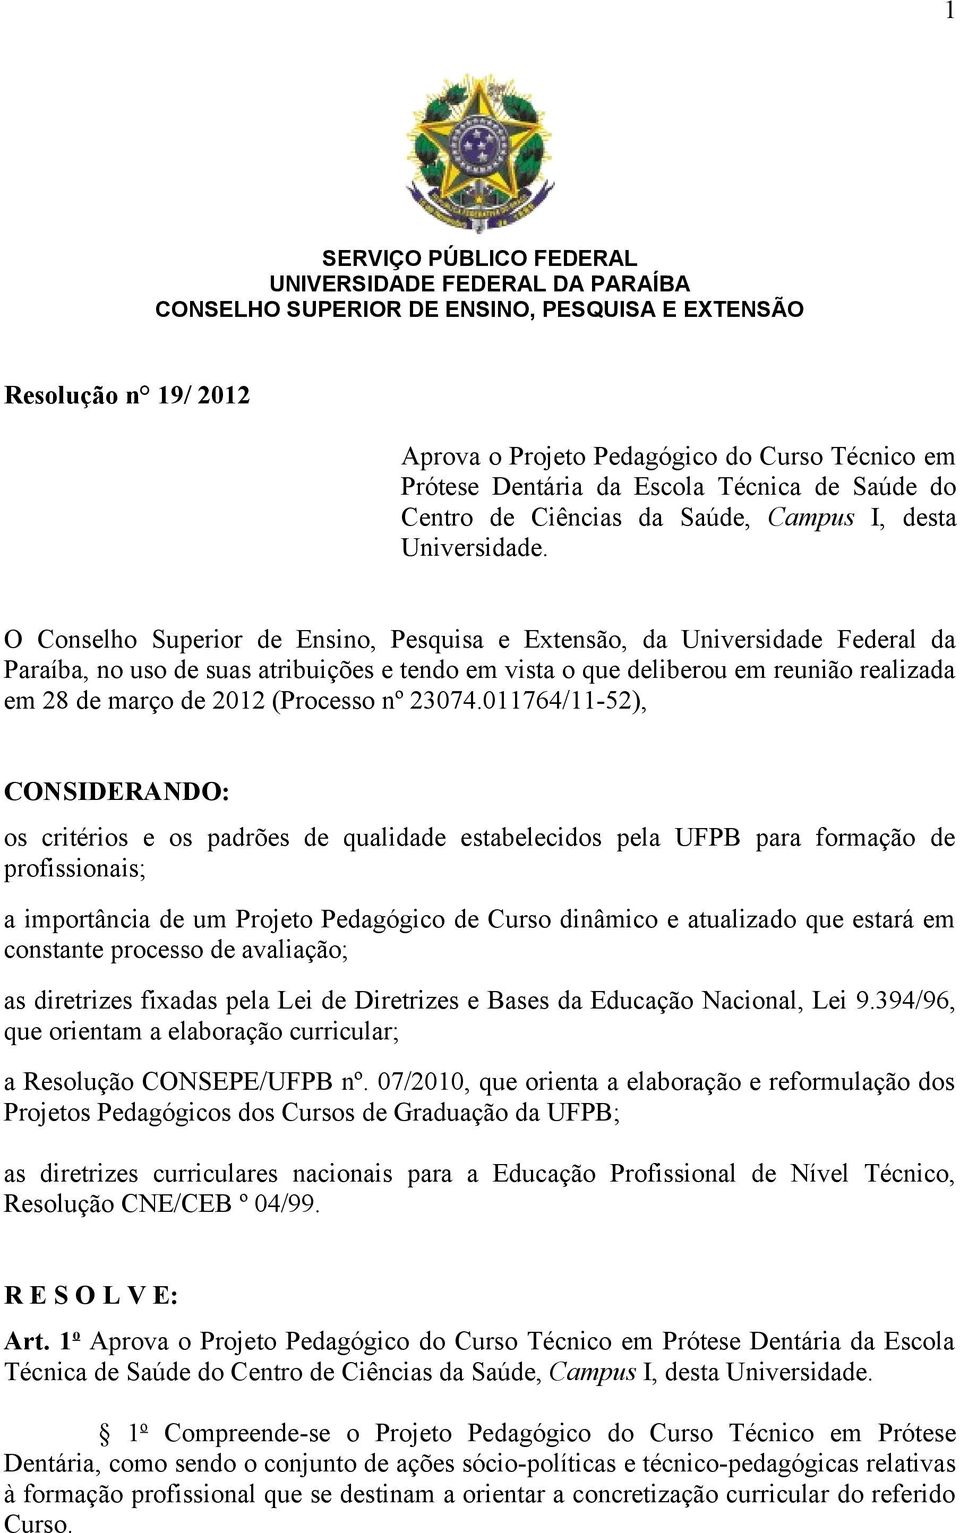 O Conselho Superior de Ensino, Pesquisa e Extensão, da Universidade Federal da Paraíba, no uso de suas atribuições e tendo em vista o que deliberou em reunião realizada em 28 de março de 2012